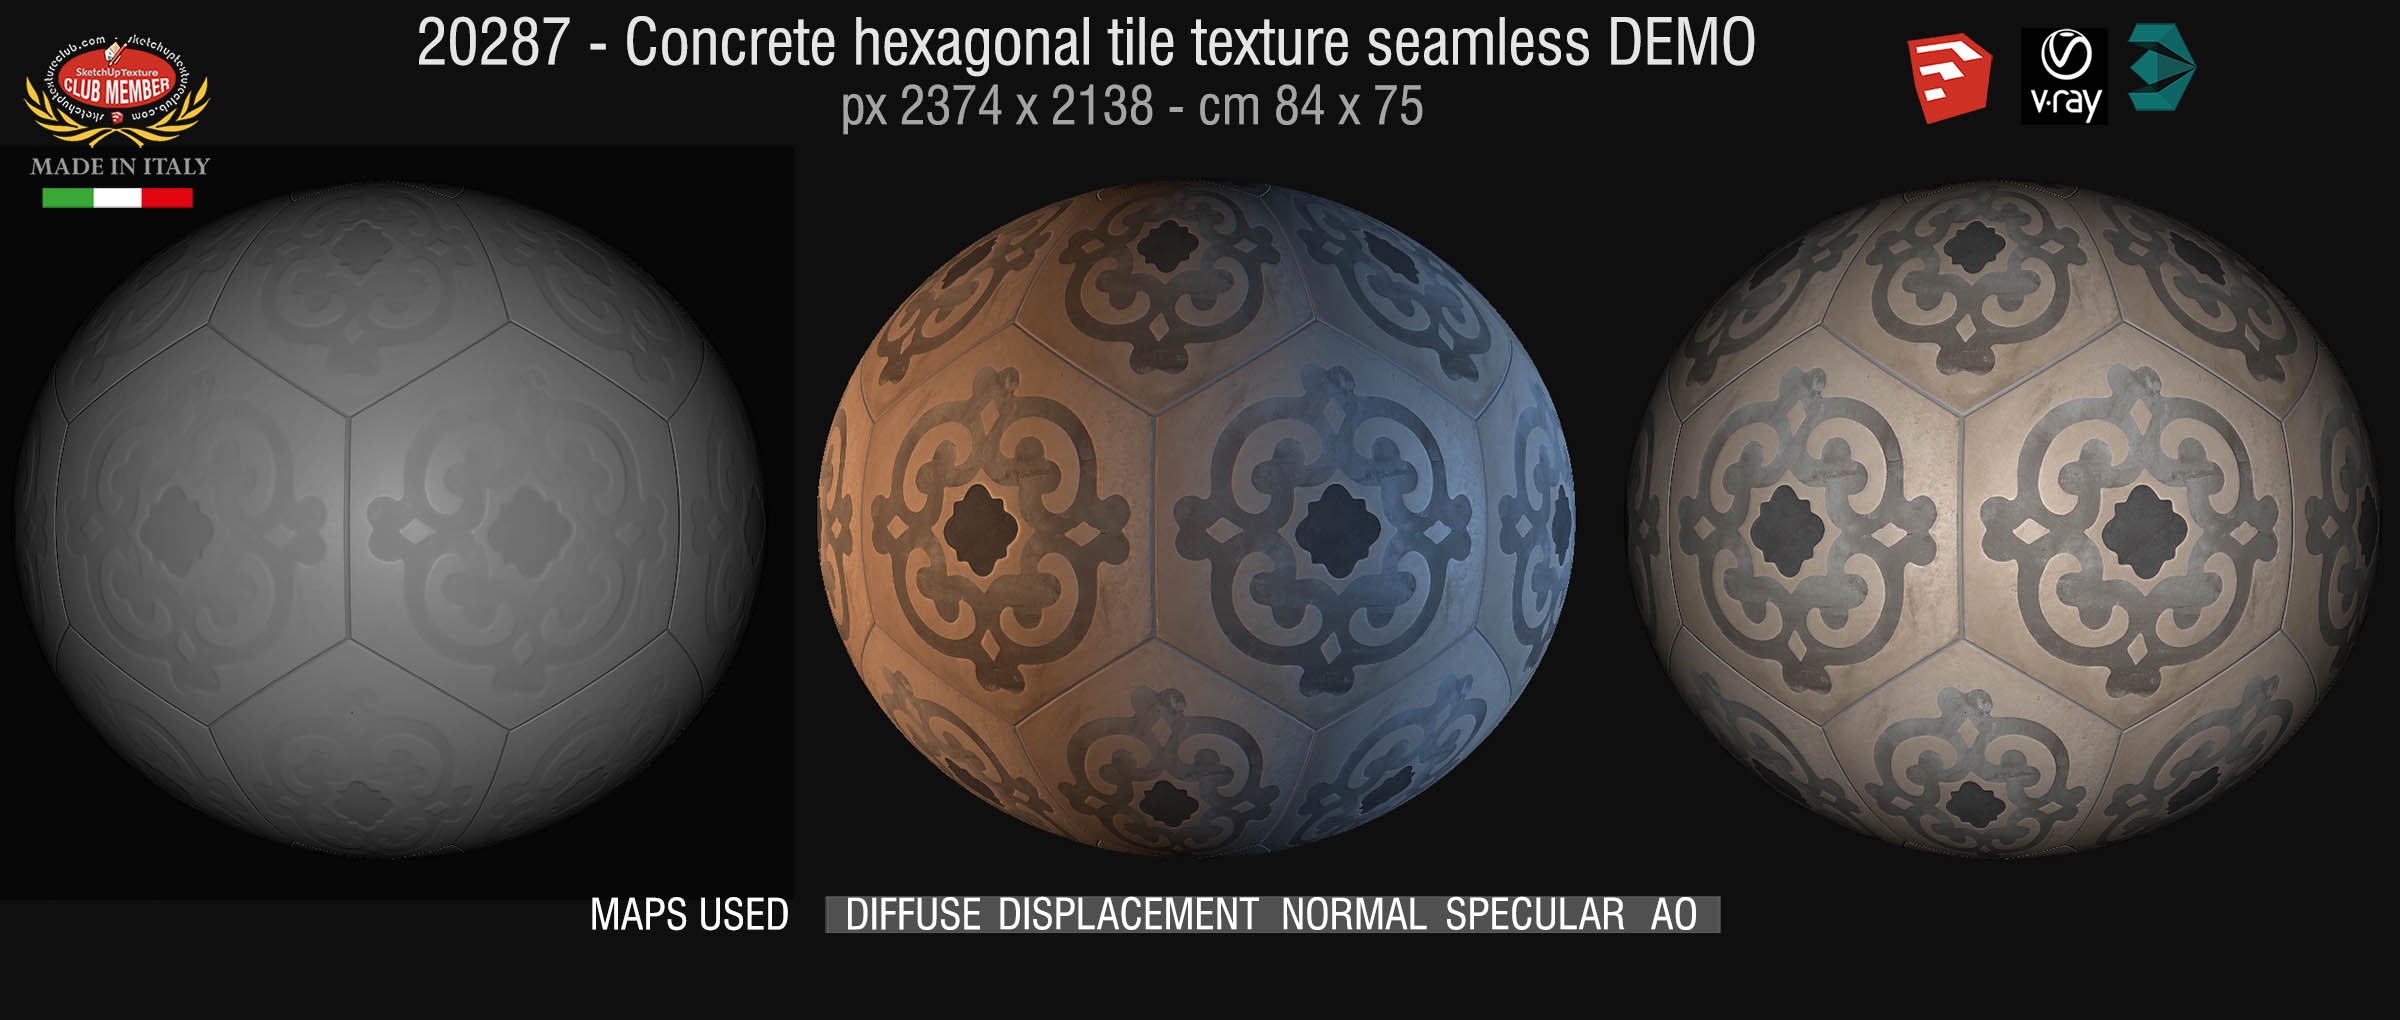 20287 Concrete hexagonal tile texture seamless + maps DEMO